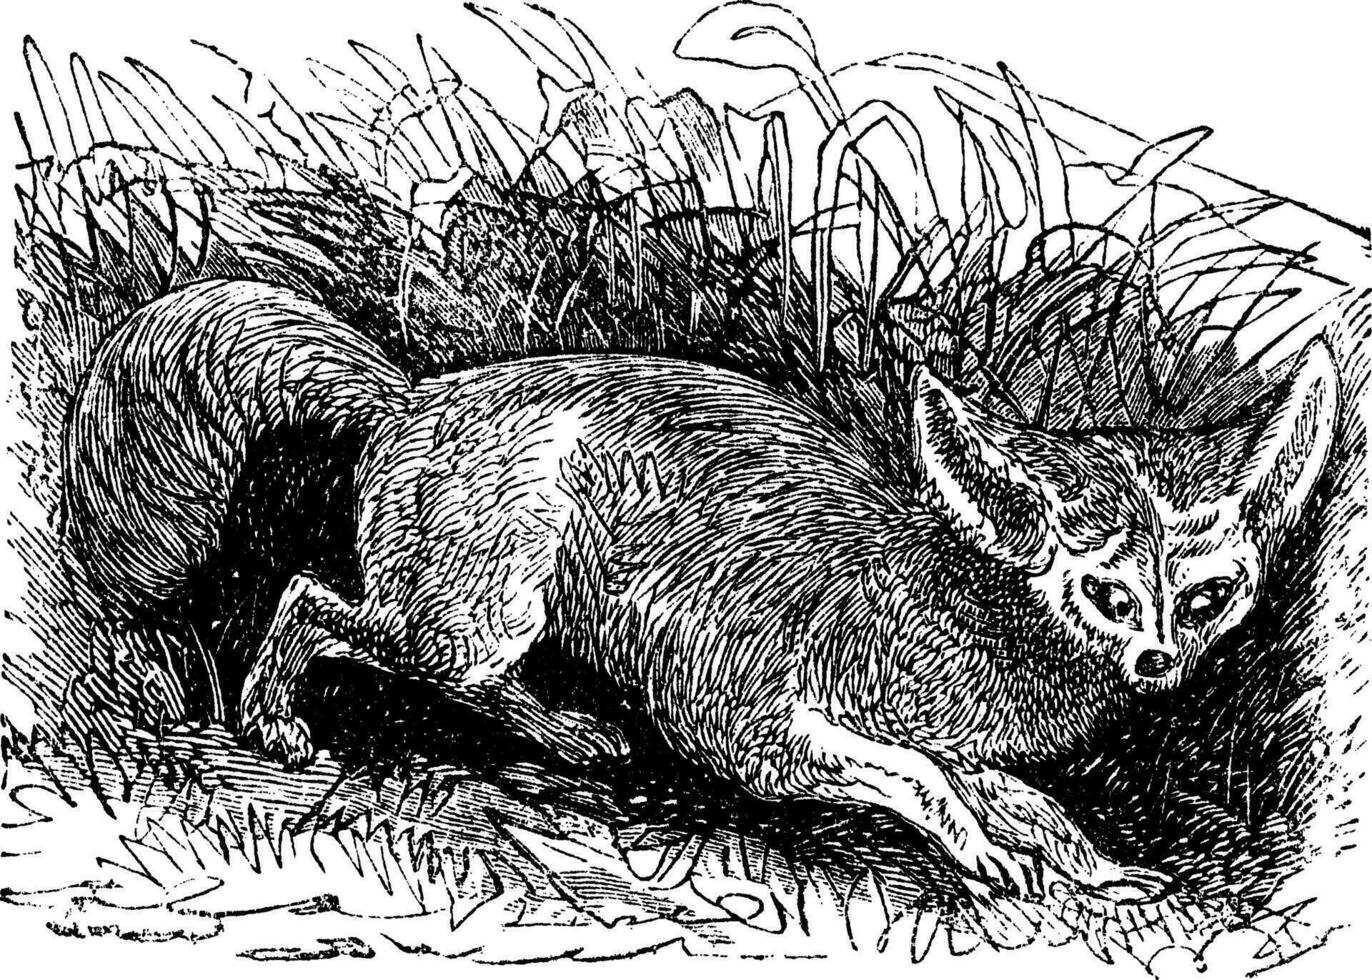 Bat-eared Fox or Otocyon megalotis, vintage engraving vector